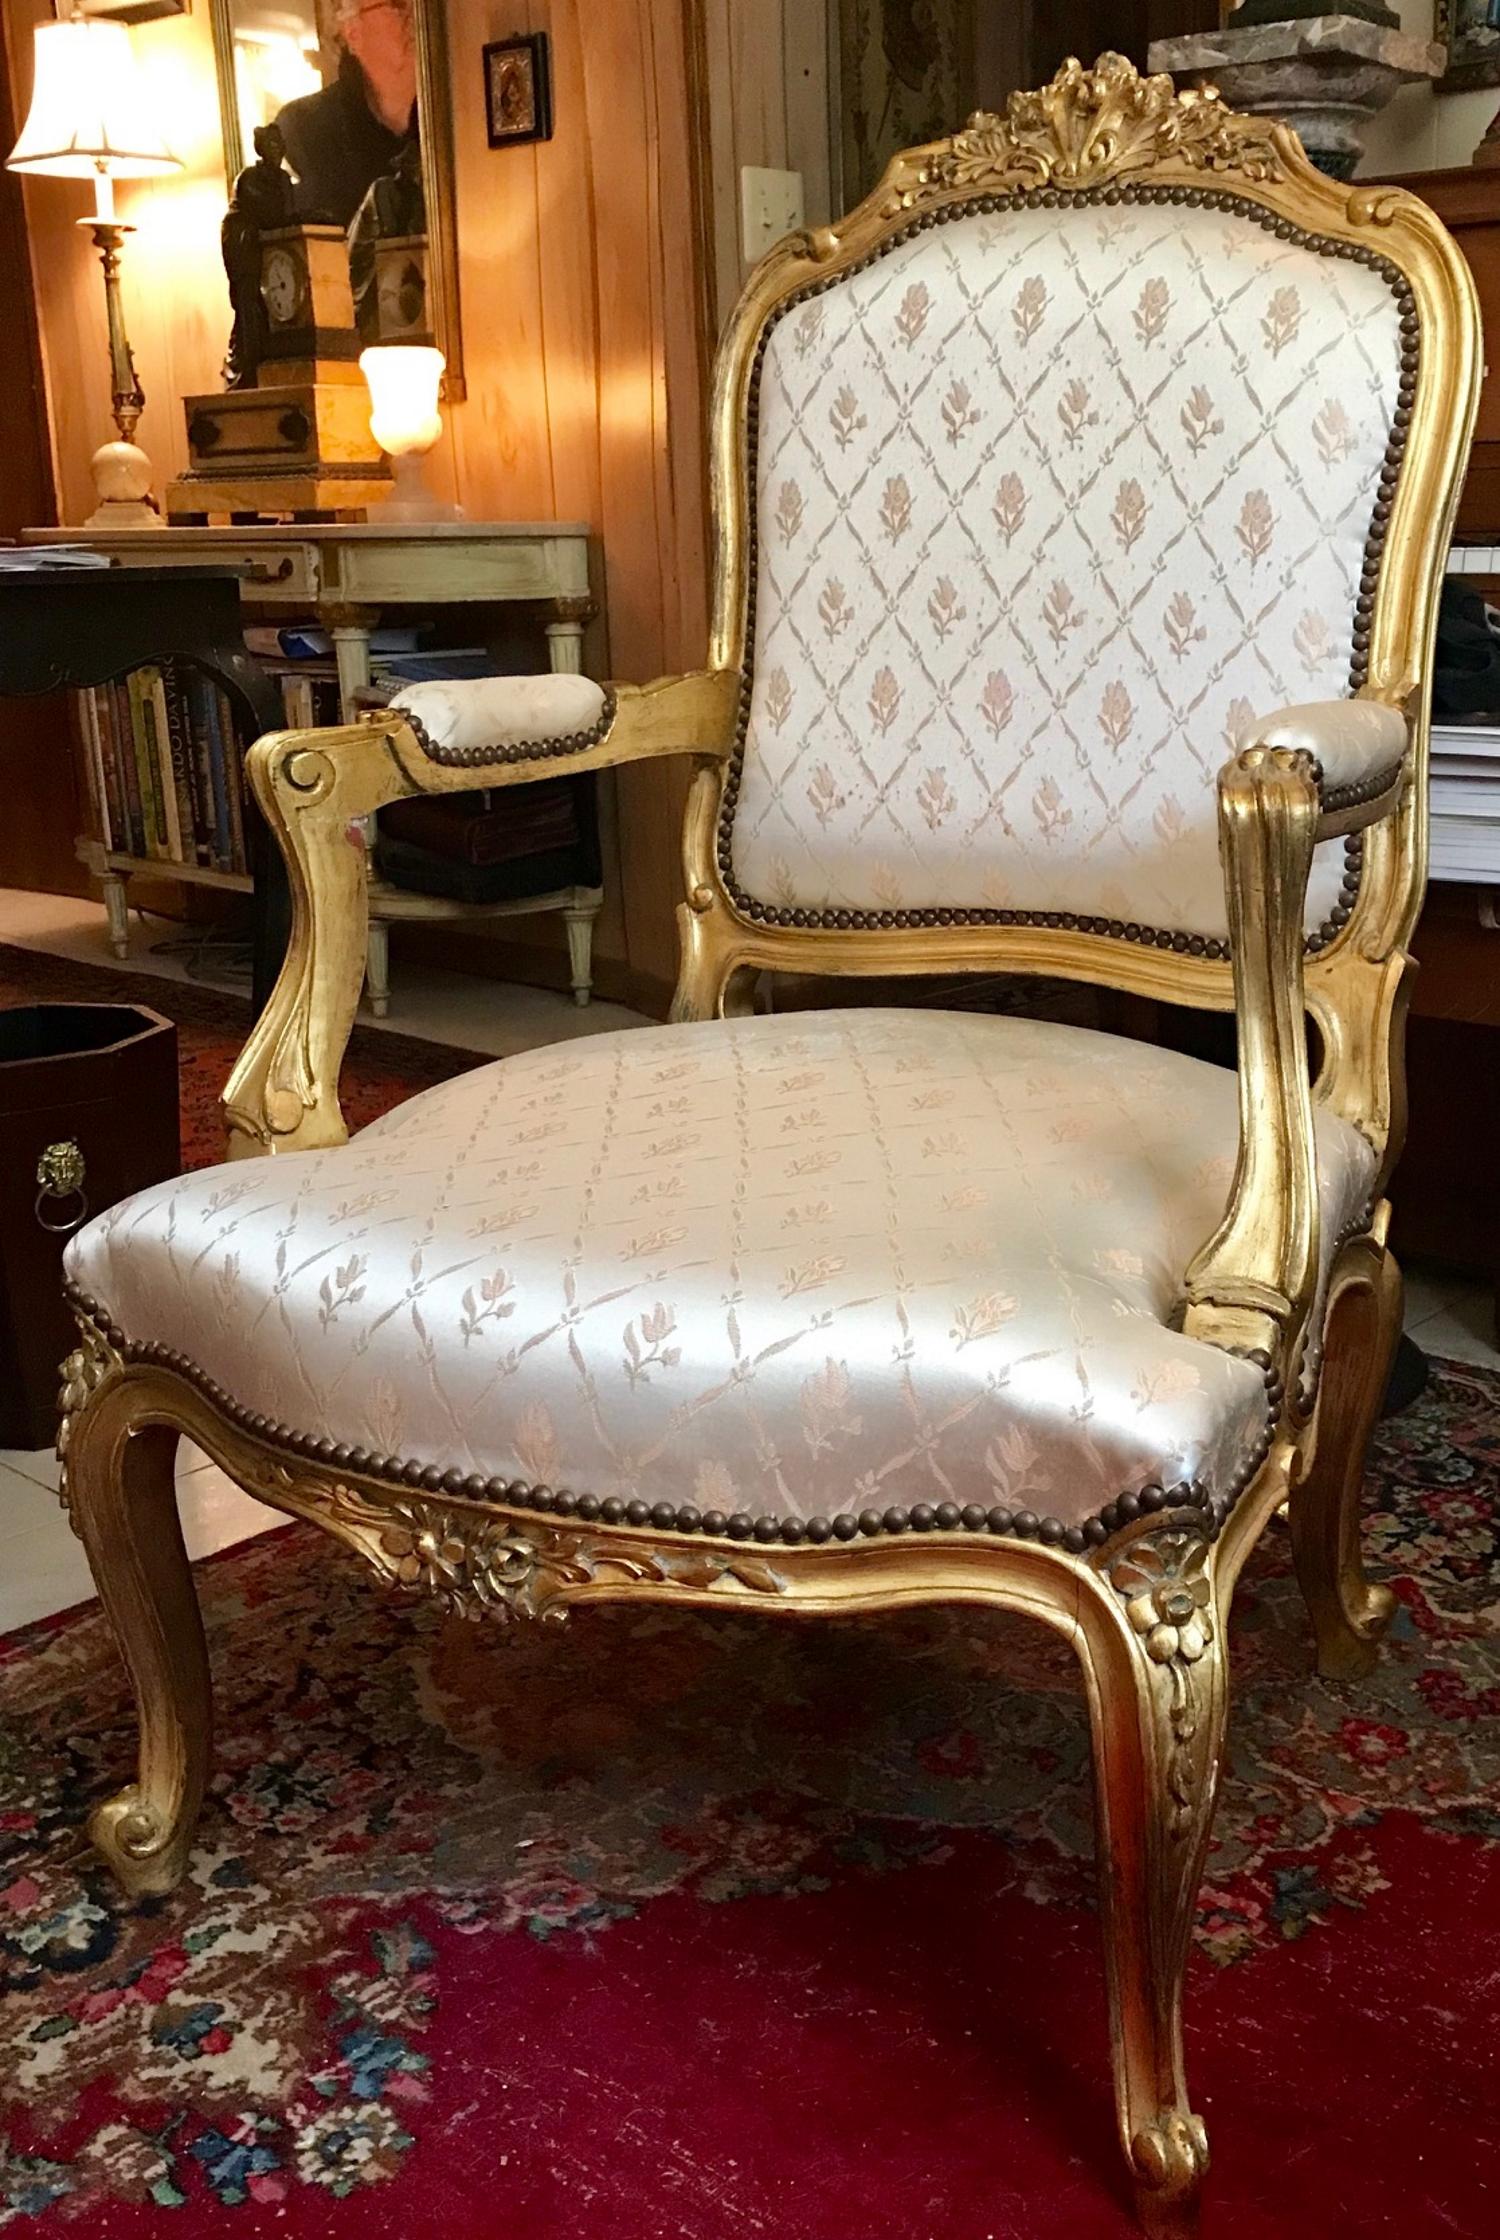 Fauteuil de style Louis XV en bois doré sculpté Fauteuil

Ce fauteuil élégant et royal présente un cadre magistralement sculpté d'acanthes et de...
accoudoirs en forme de volutes de coquillages. Les pieds cabriole se terminent par des rinceaux